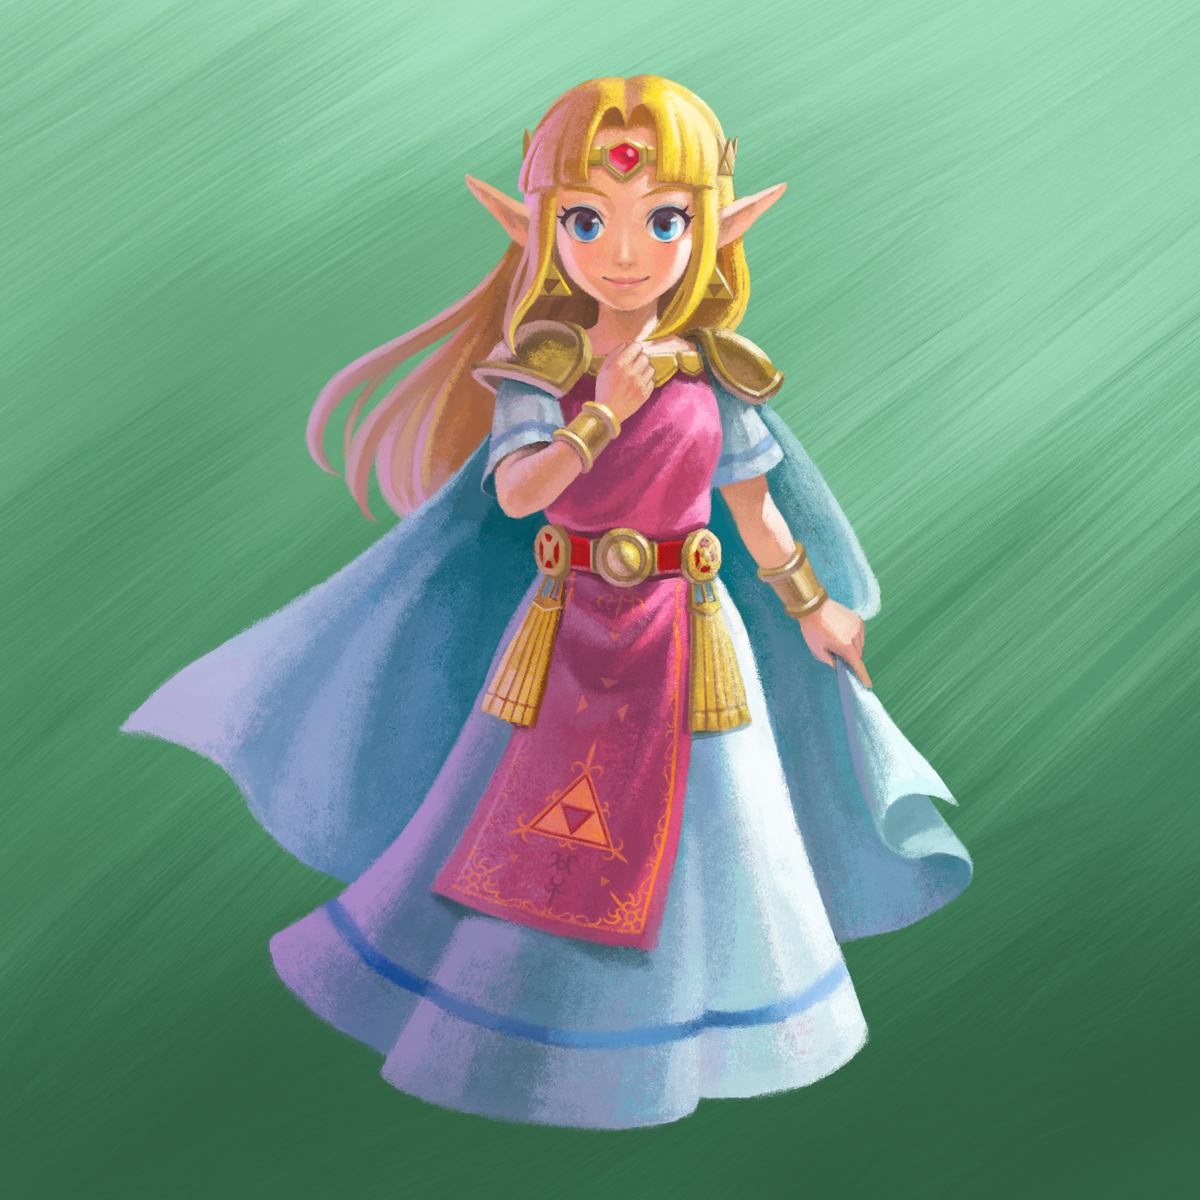 Princess_Zelda_Artwork_%28A_Link_Between_Worlds%29.jpg